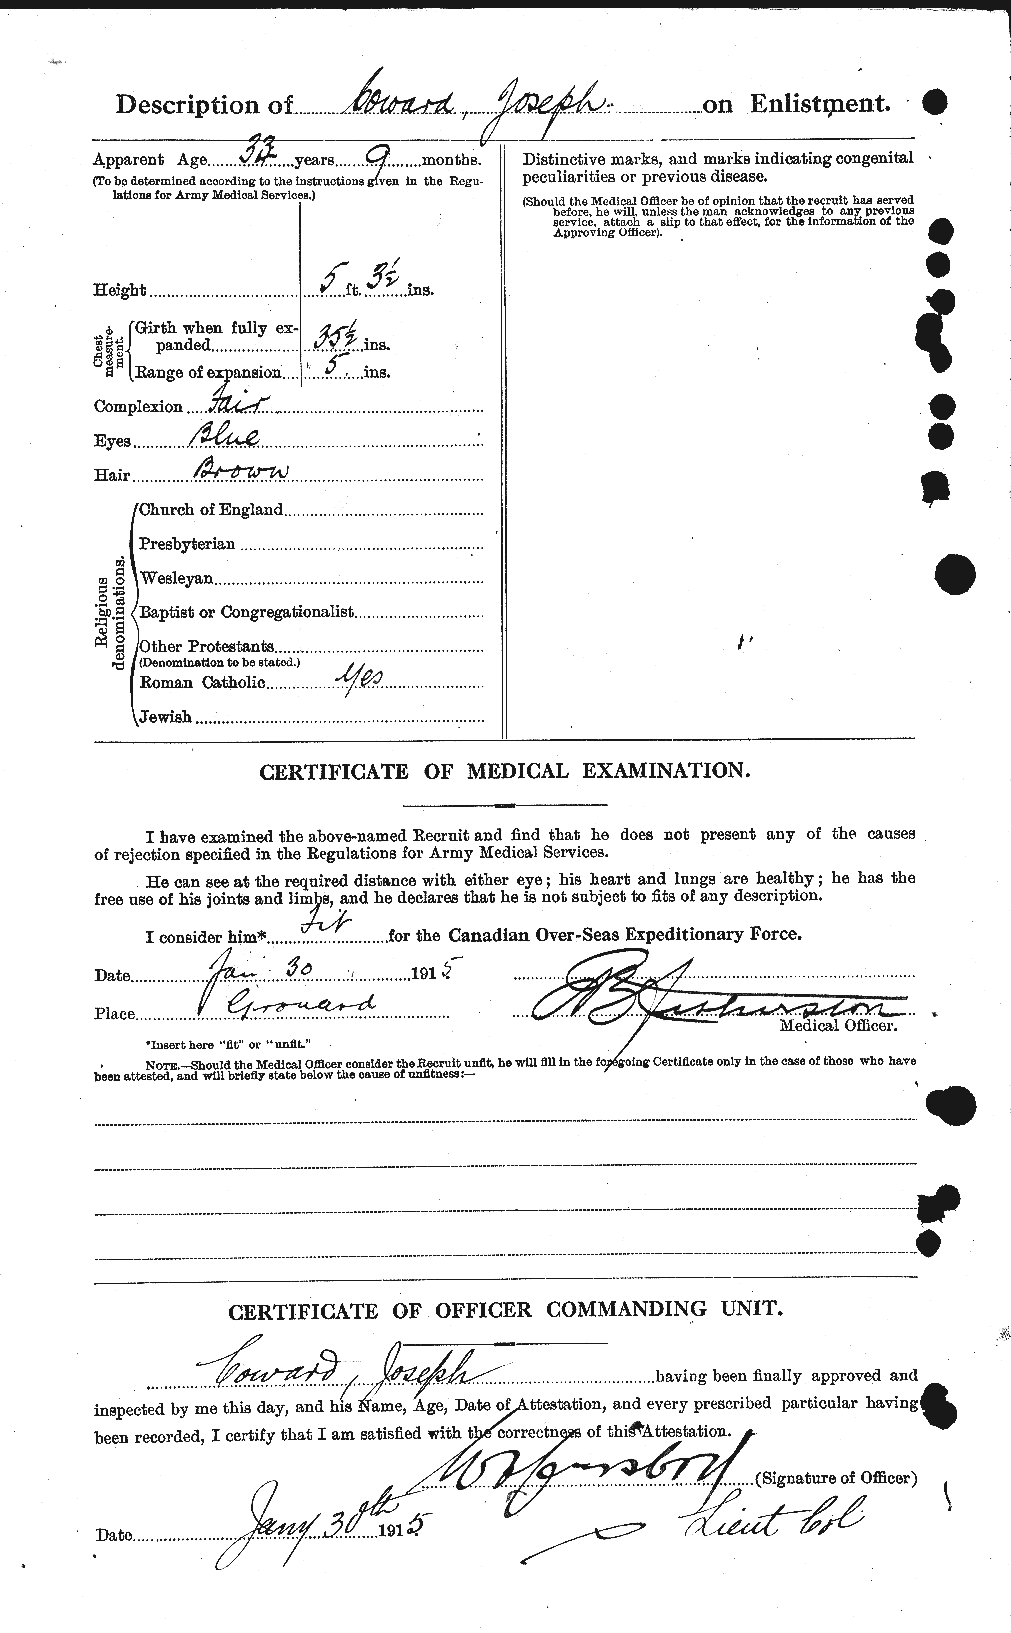 Dossiers du Personnel de la Première Guerre mondiale - CEC 057932b